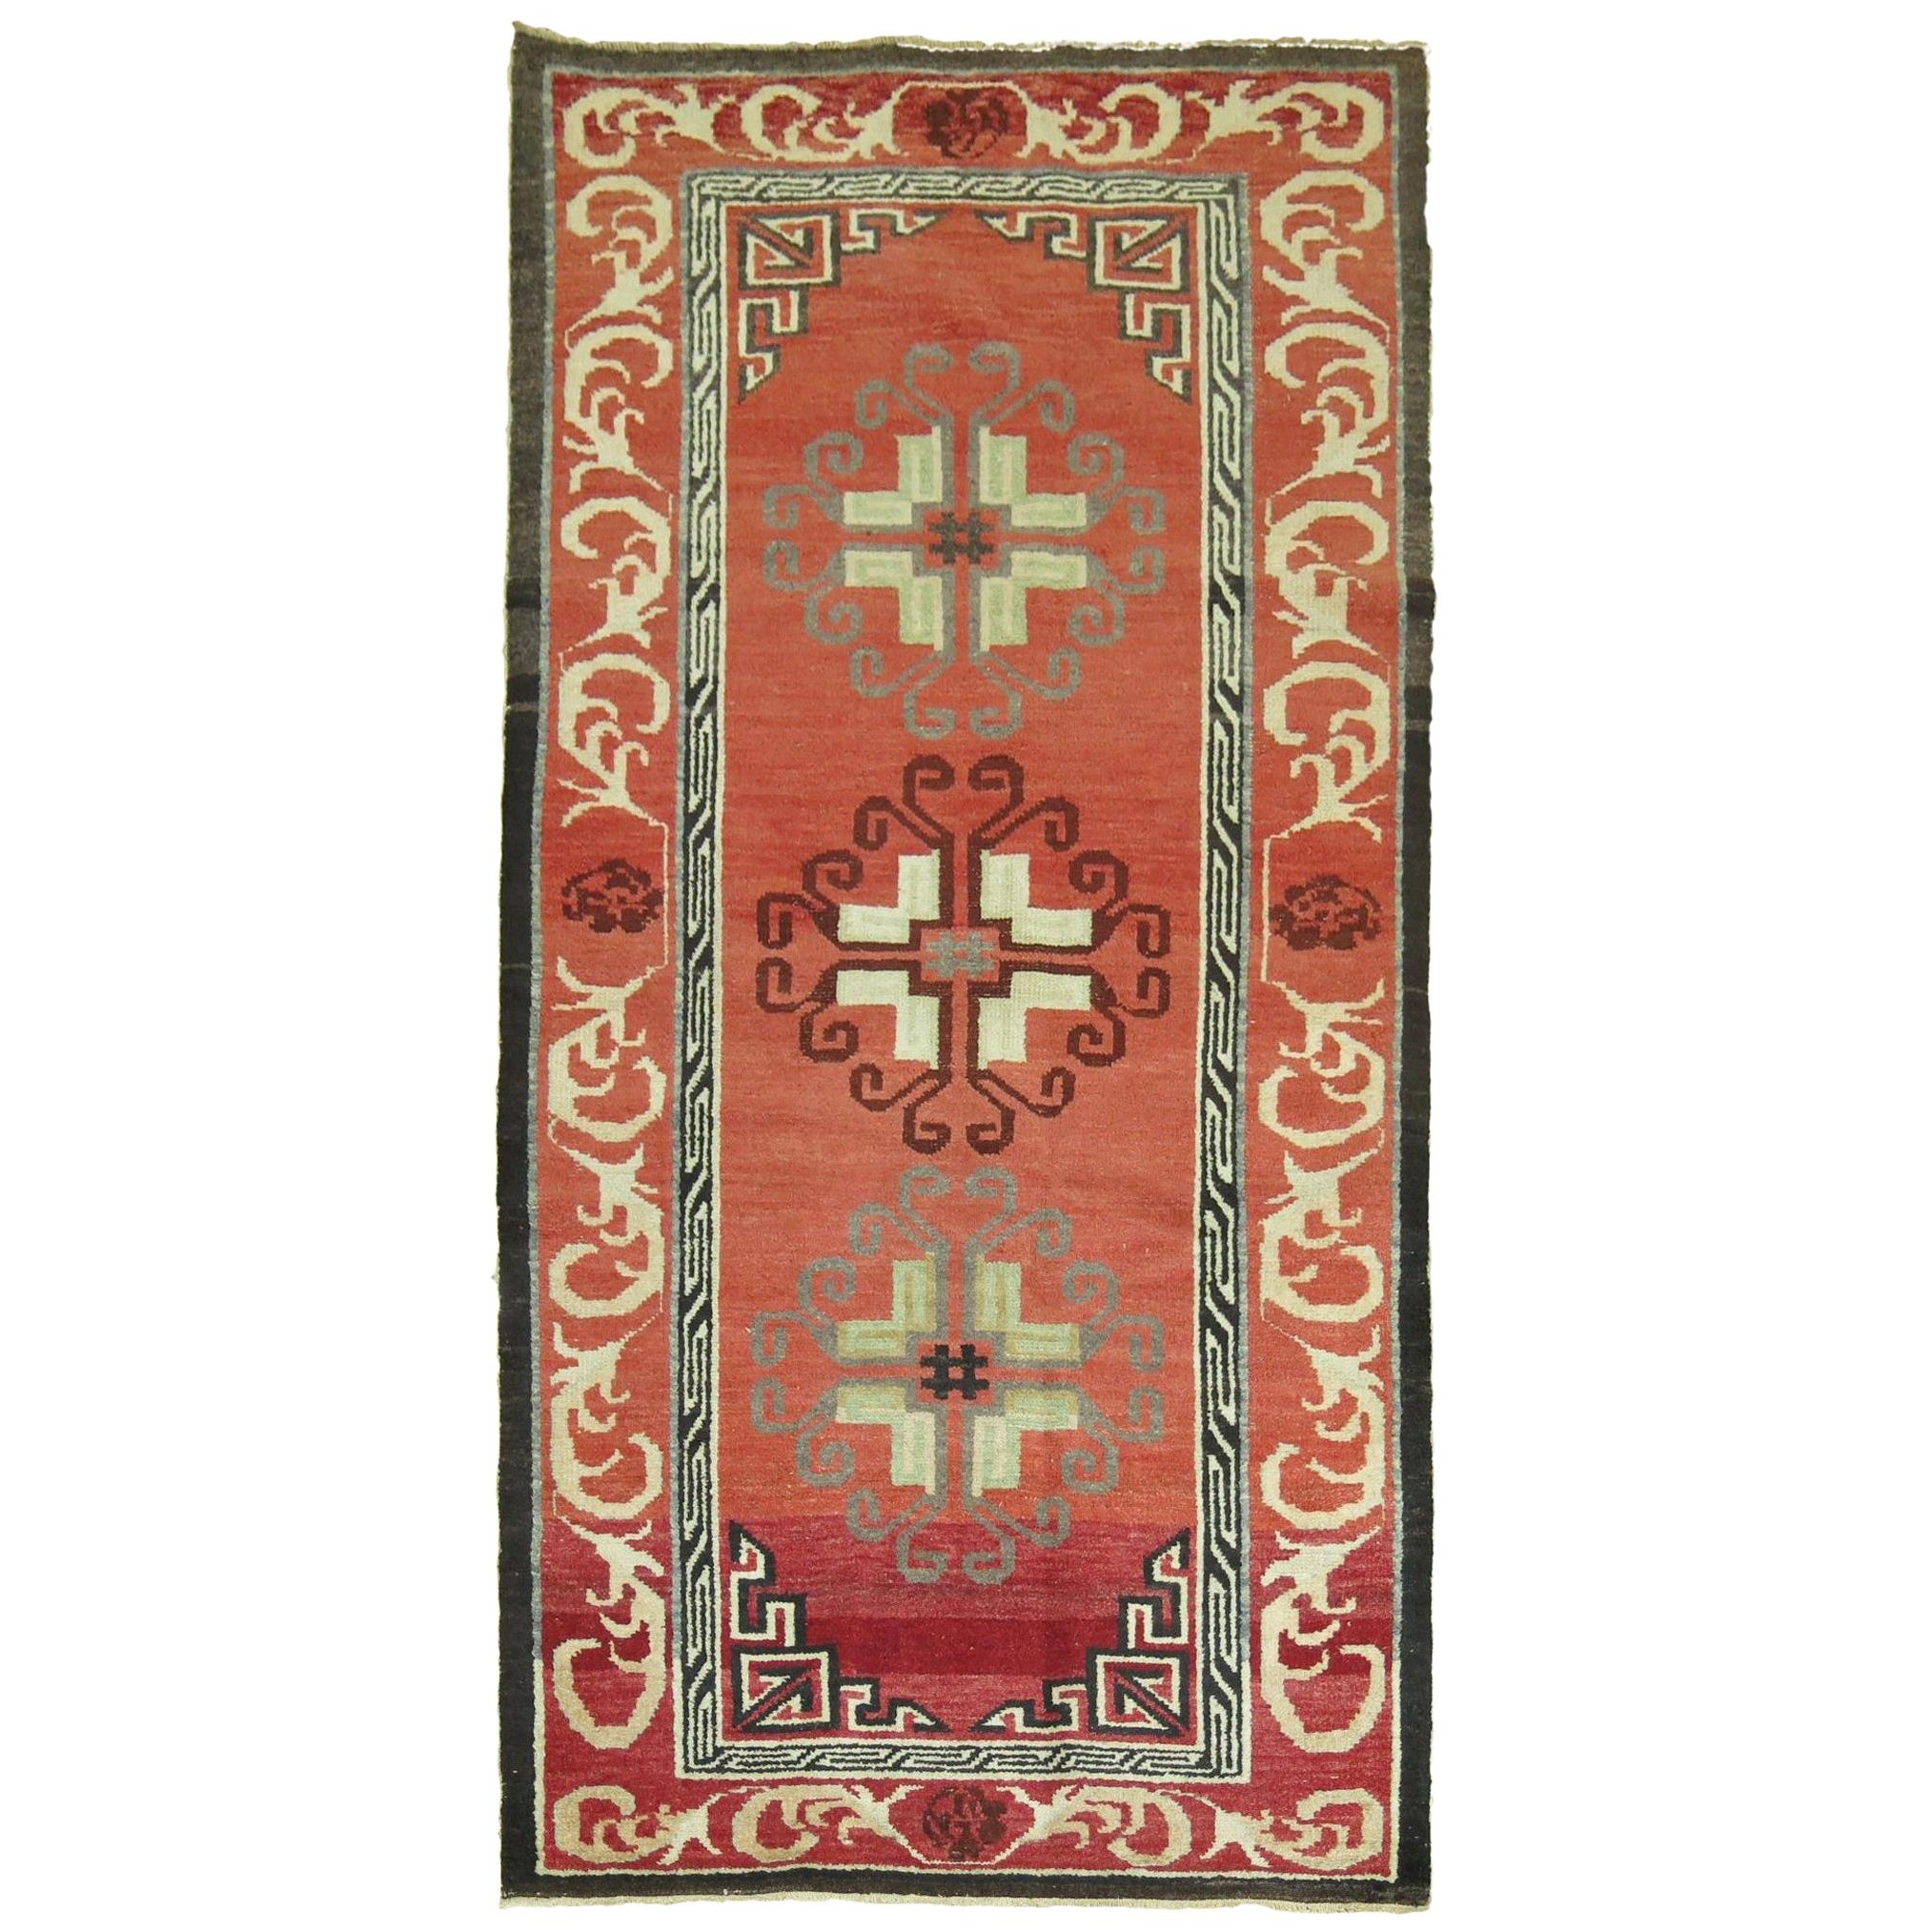 Roter türkischer Vintage-Teppich, inspiriert von asiatischen Khotan-Teppichen aus dem 19.